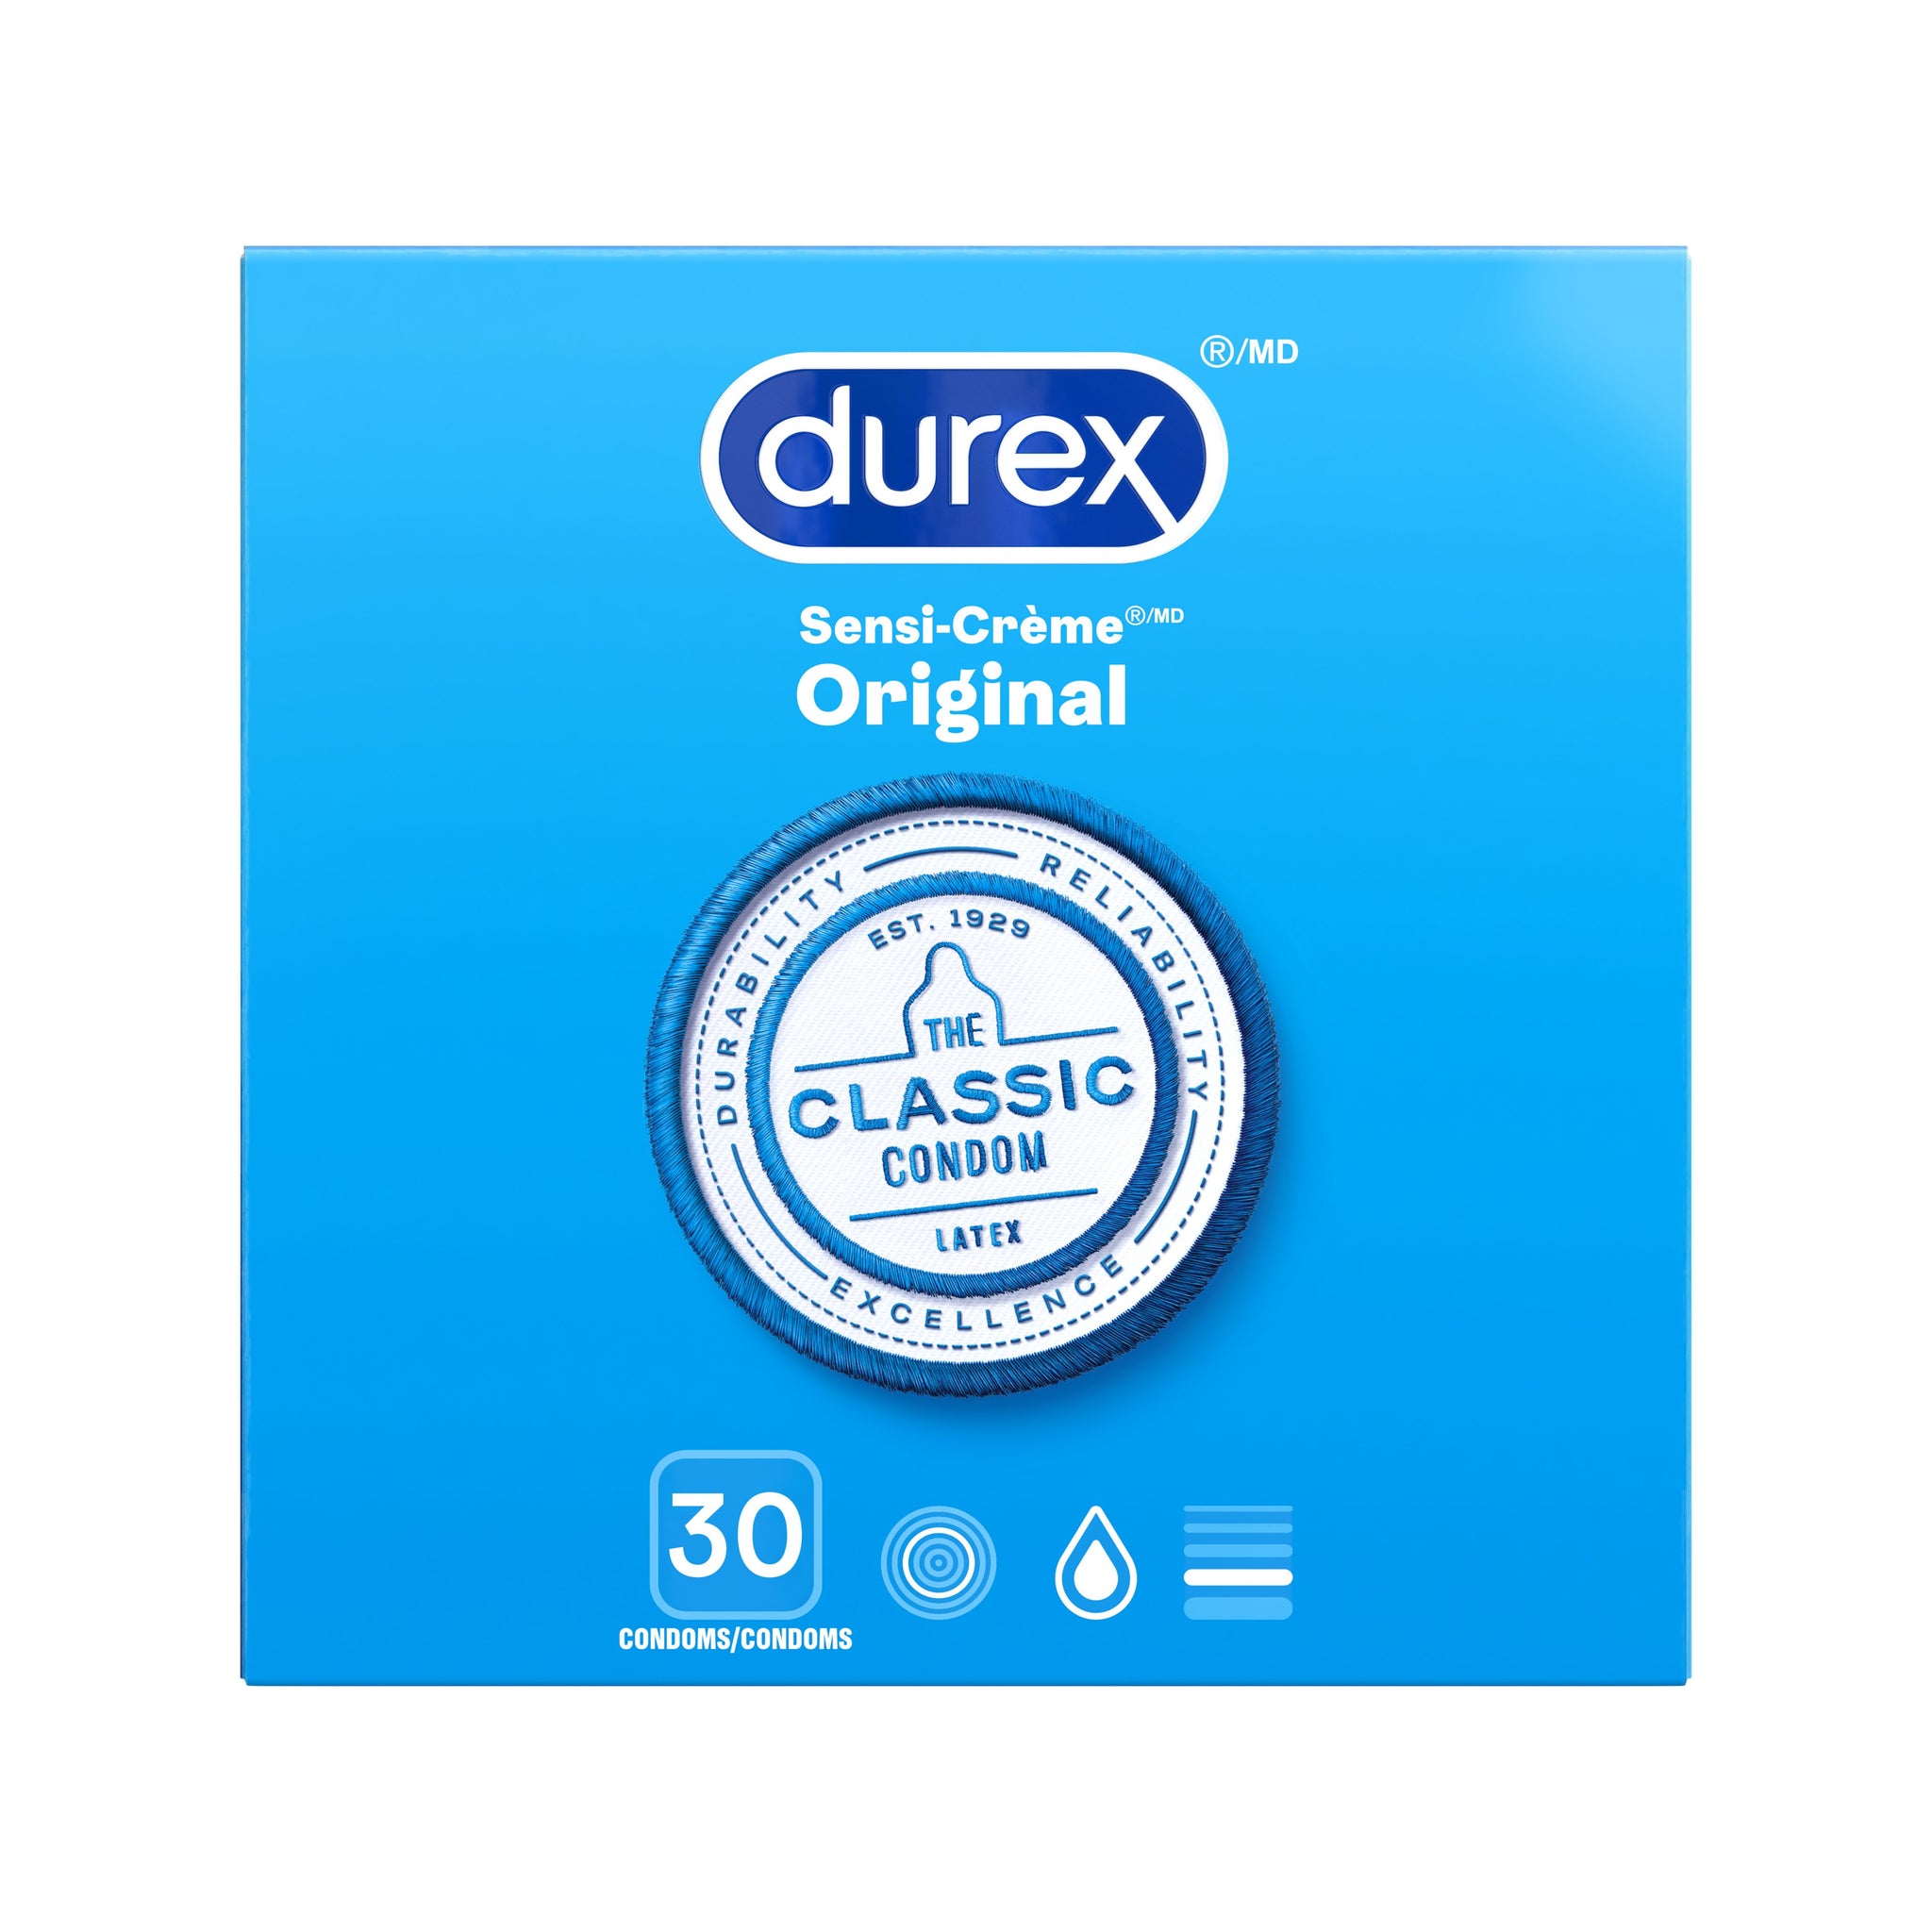 packshot of Un paquet de 30 condoms Durex Sensi-Crème Original.